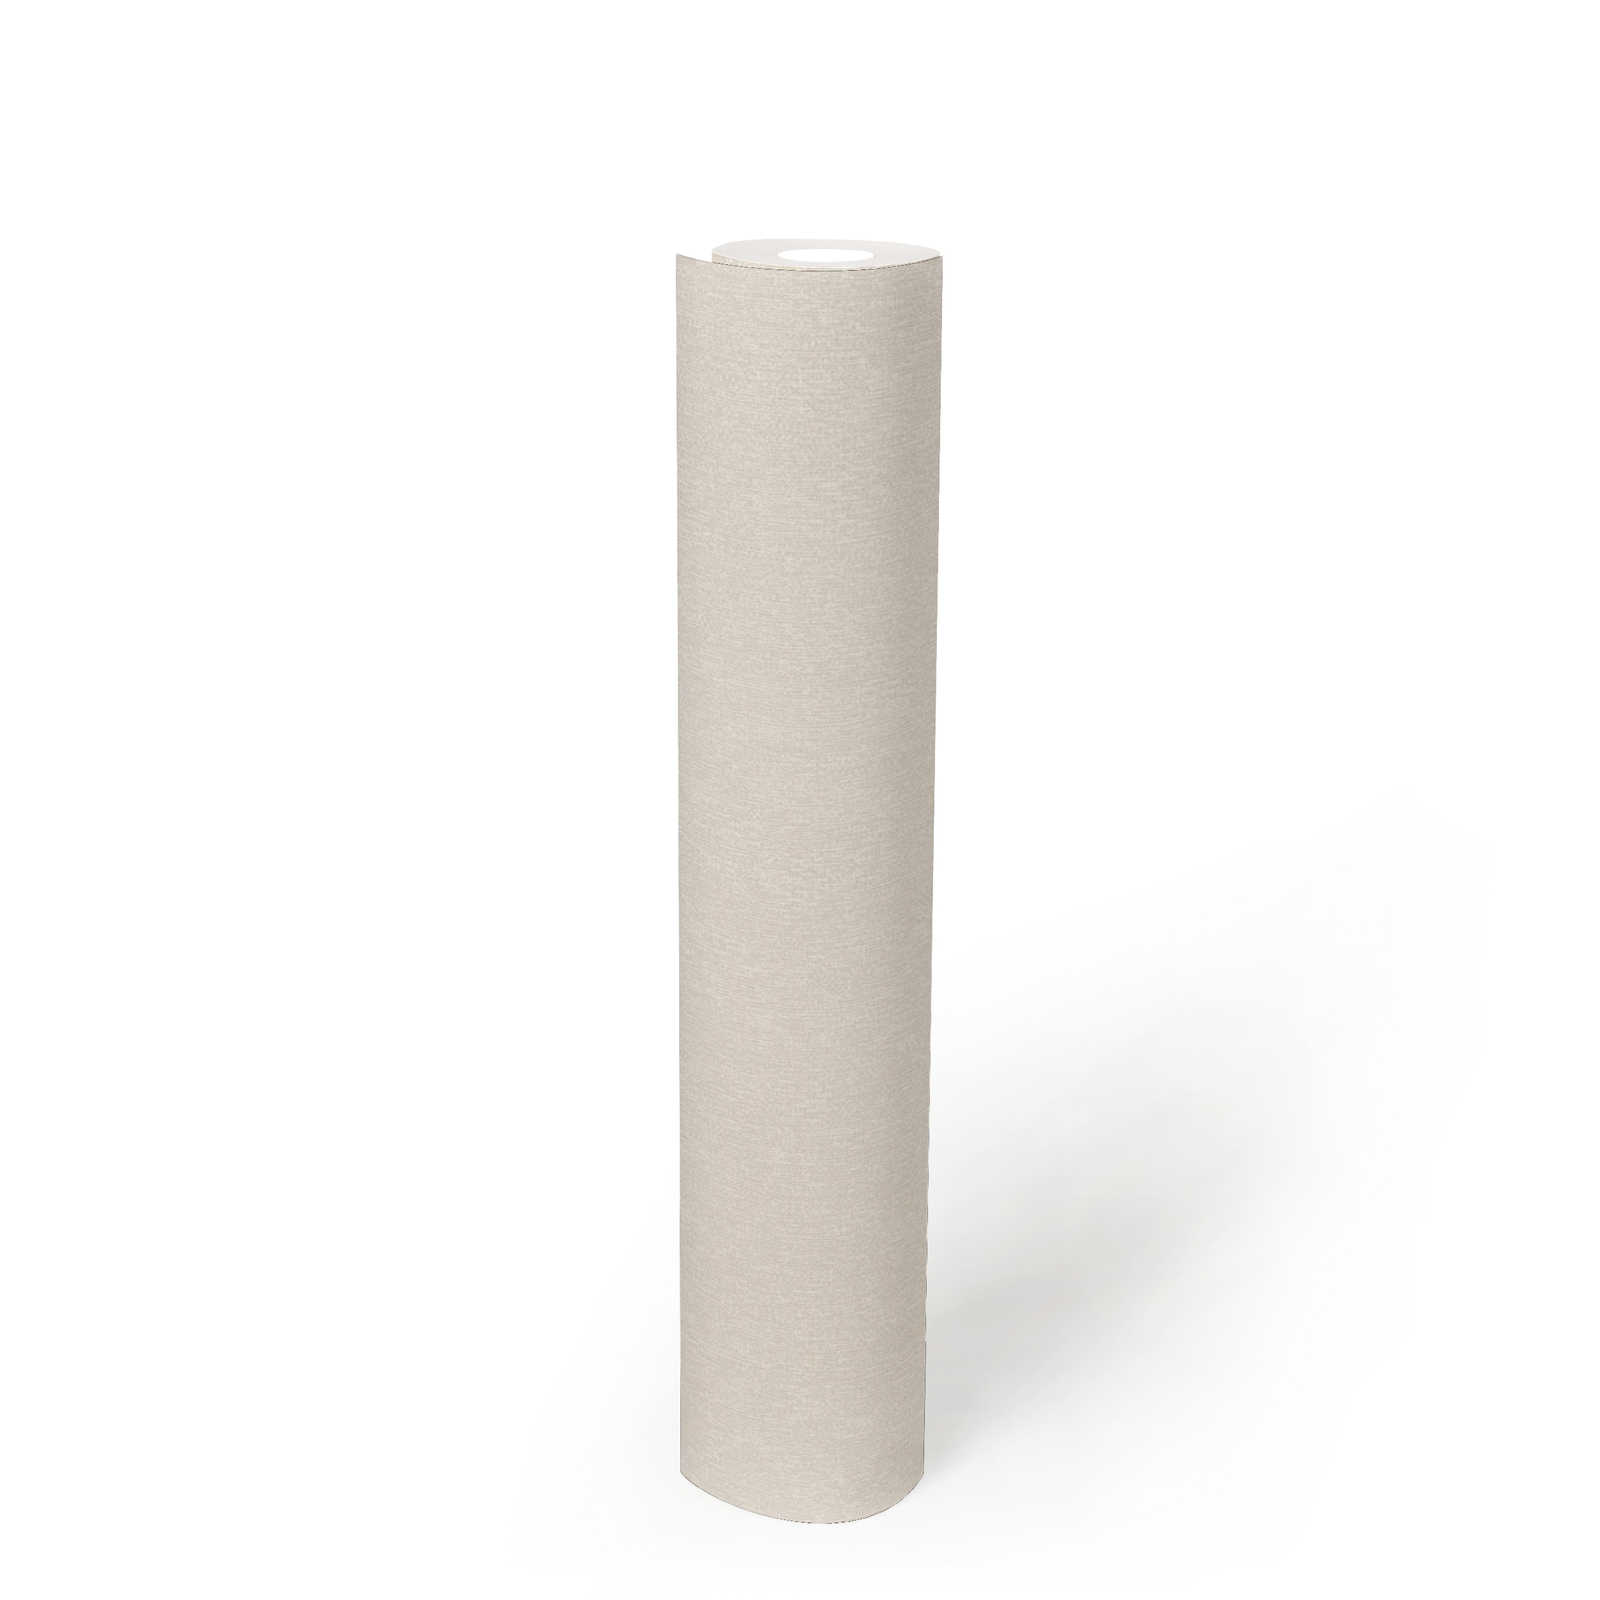             Papier peint uni mat & aspect structuré - blanc
        